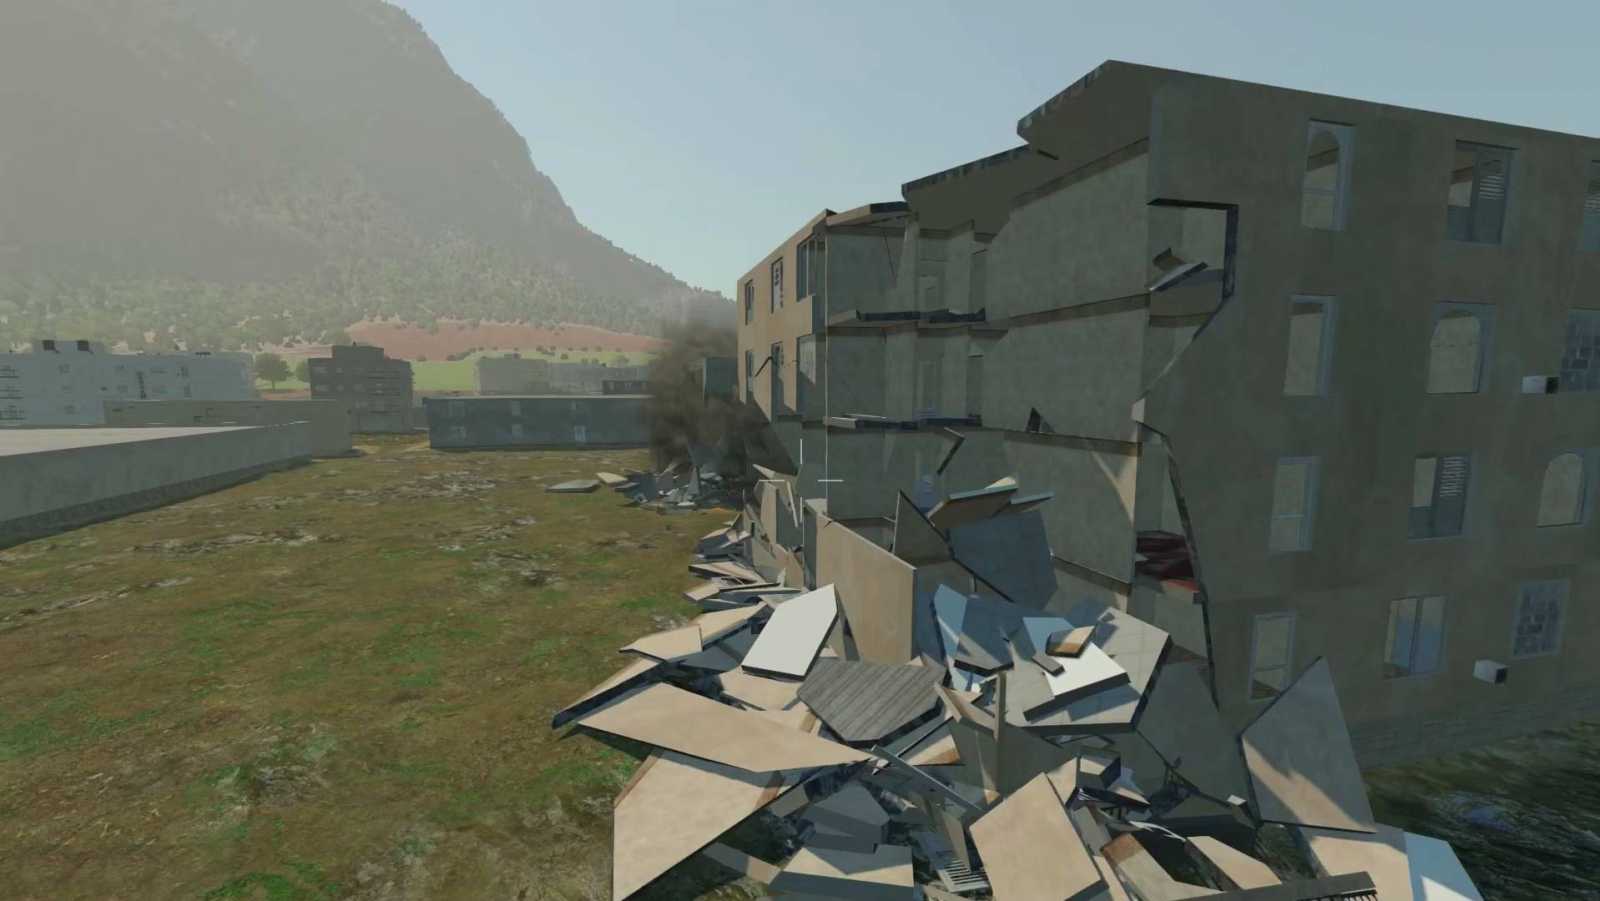 Tisíce věrně zničitelných budov na jedné obří mapě? To v běžné herní produkci opravdu nenajdete...